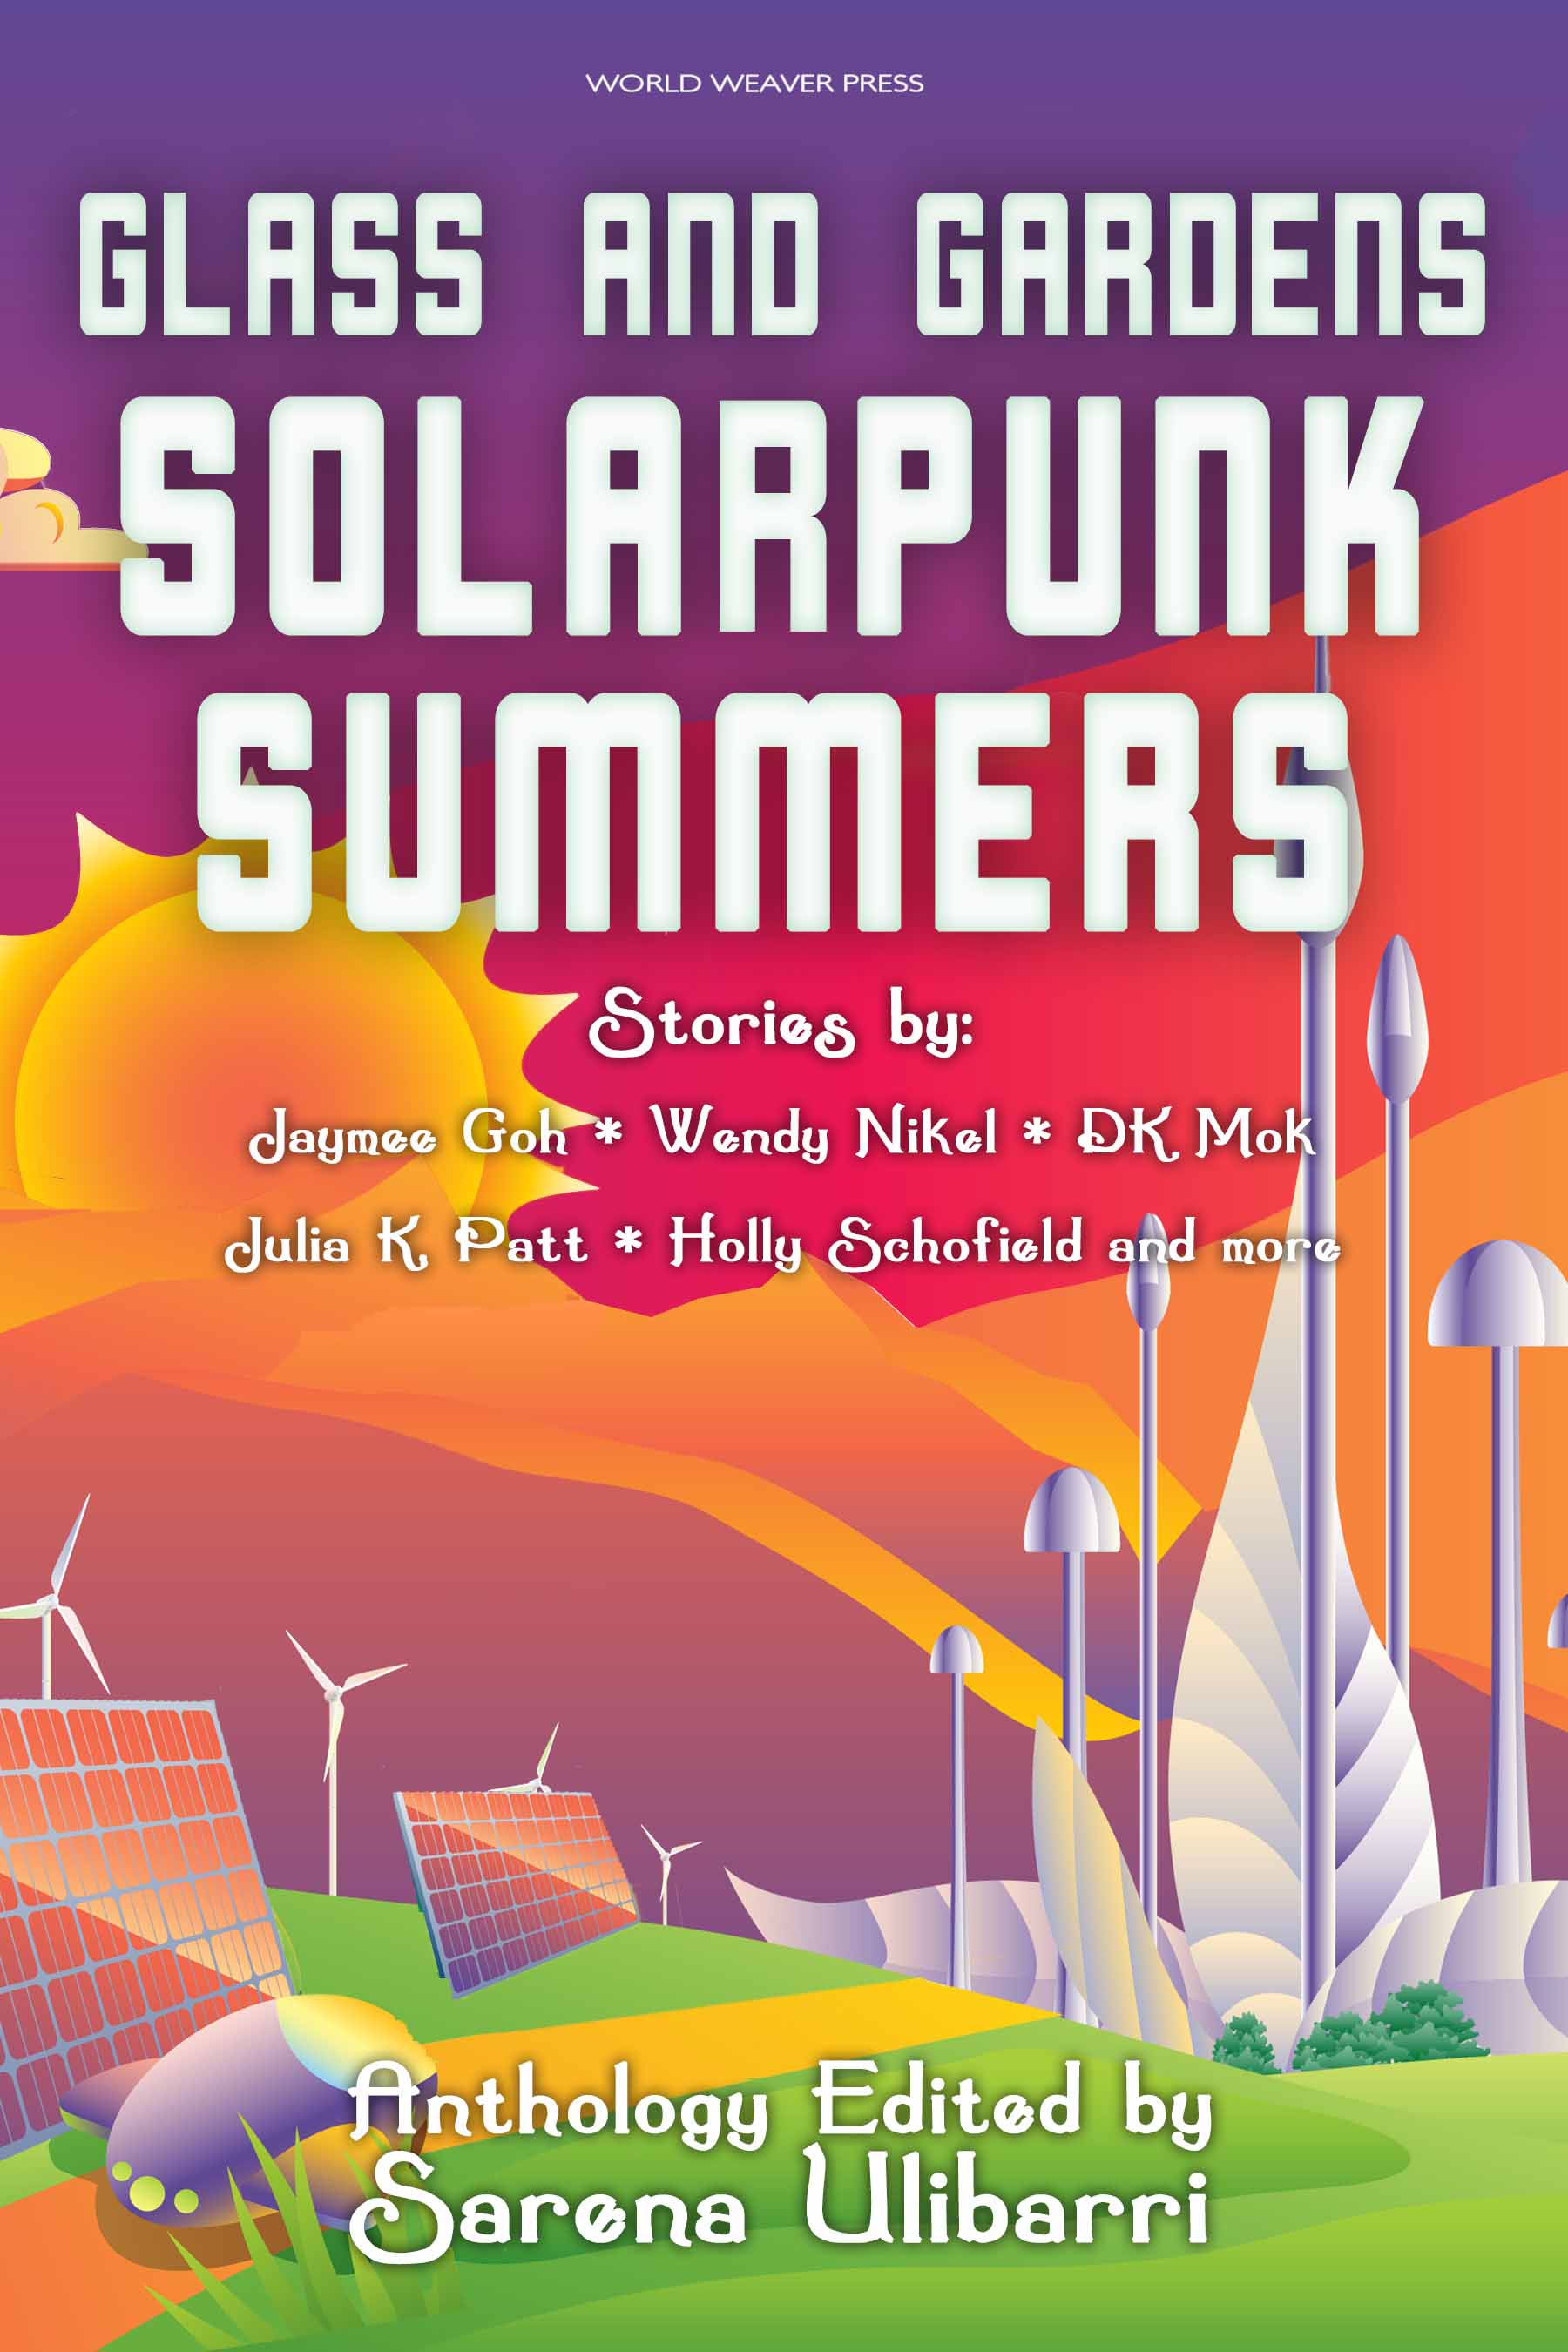 Solarpunk Release Date, News & Reviews 